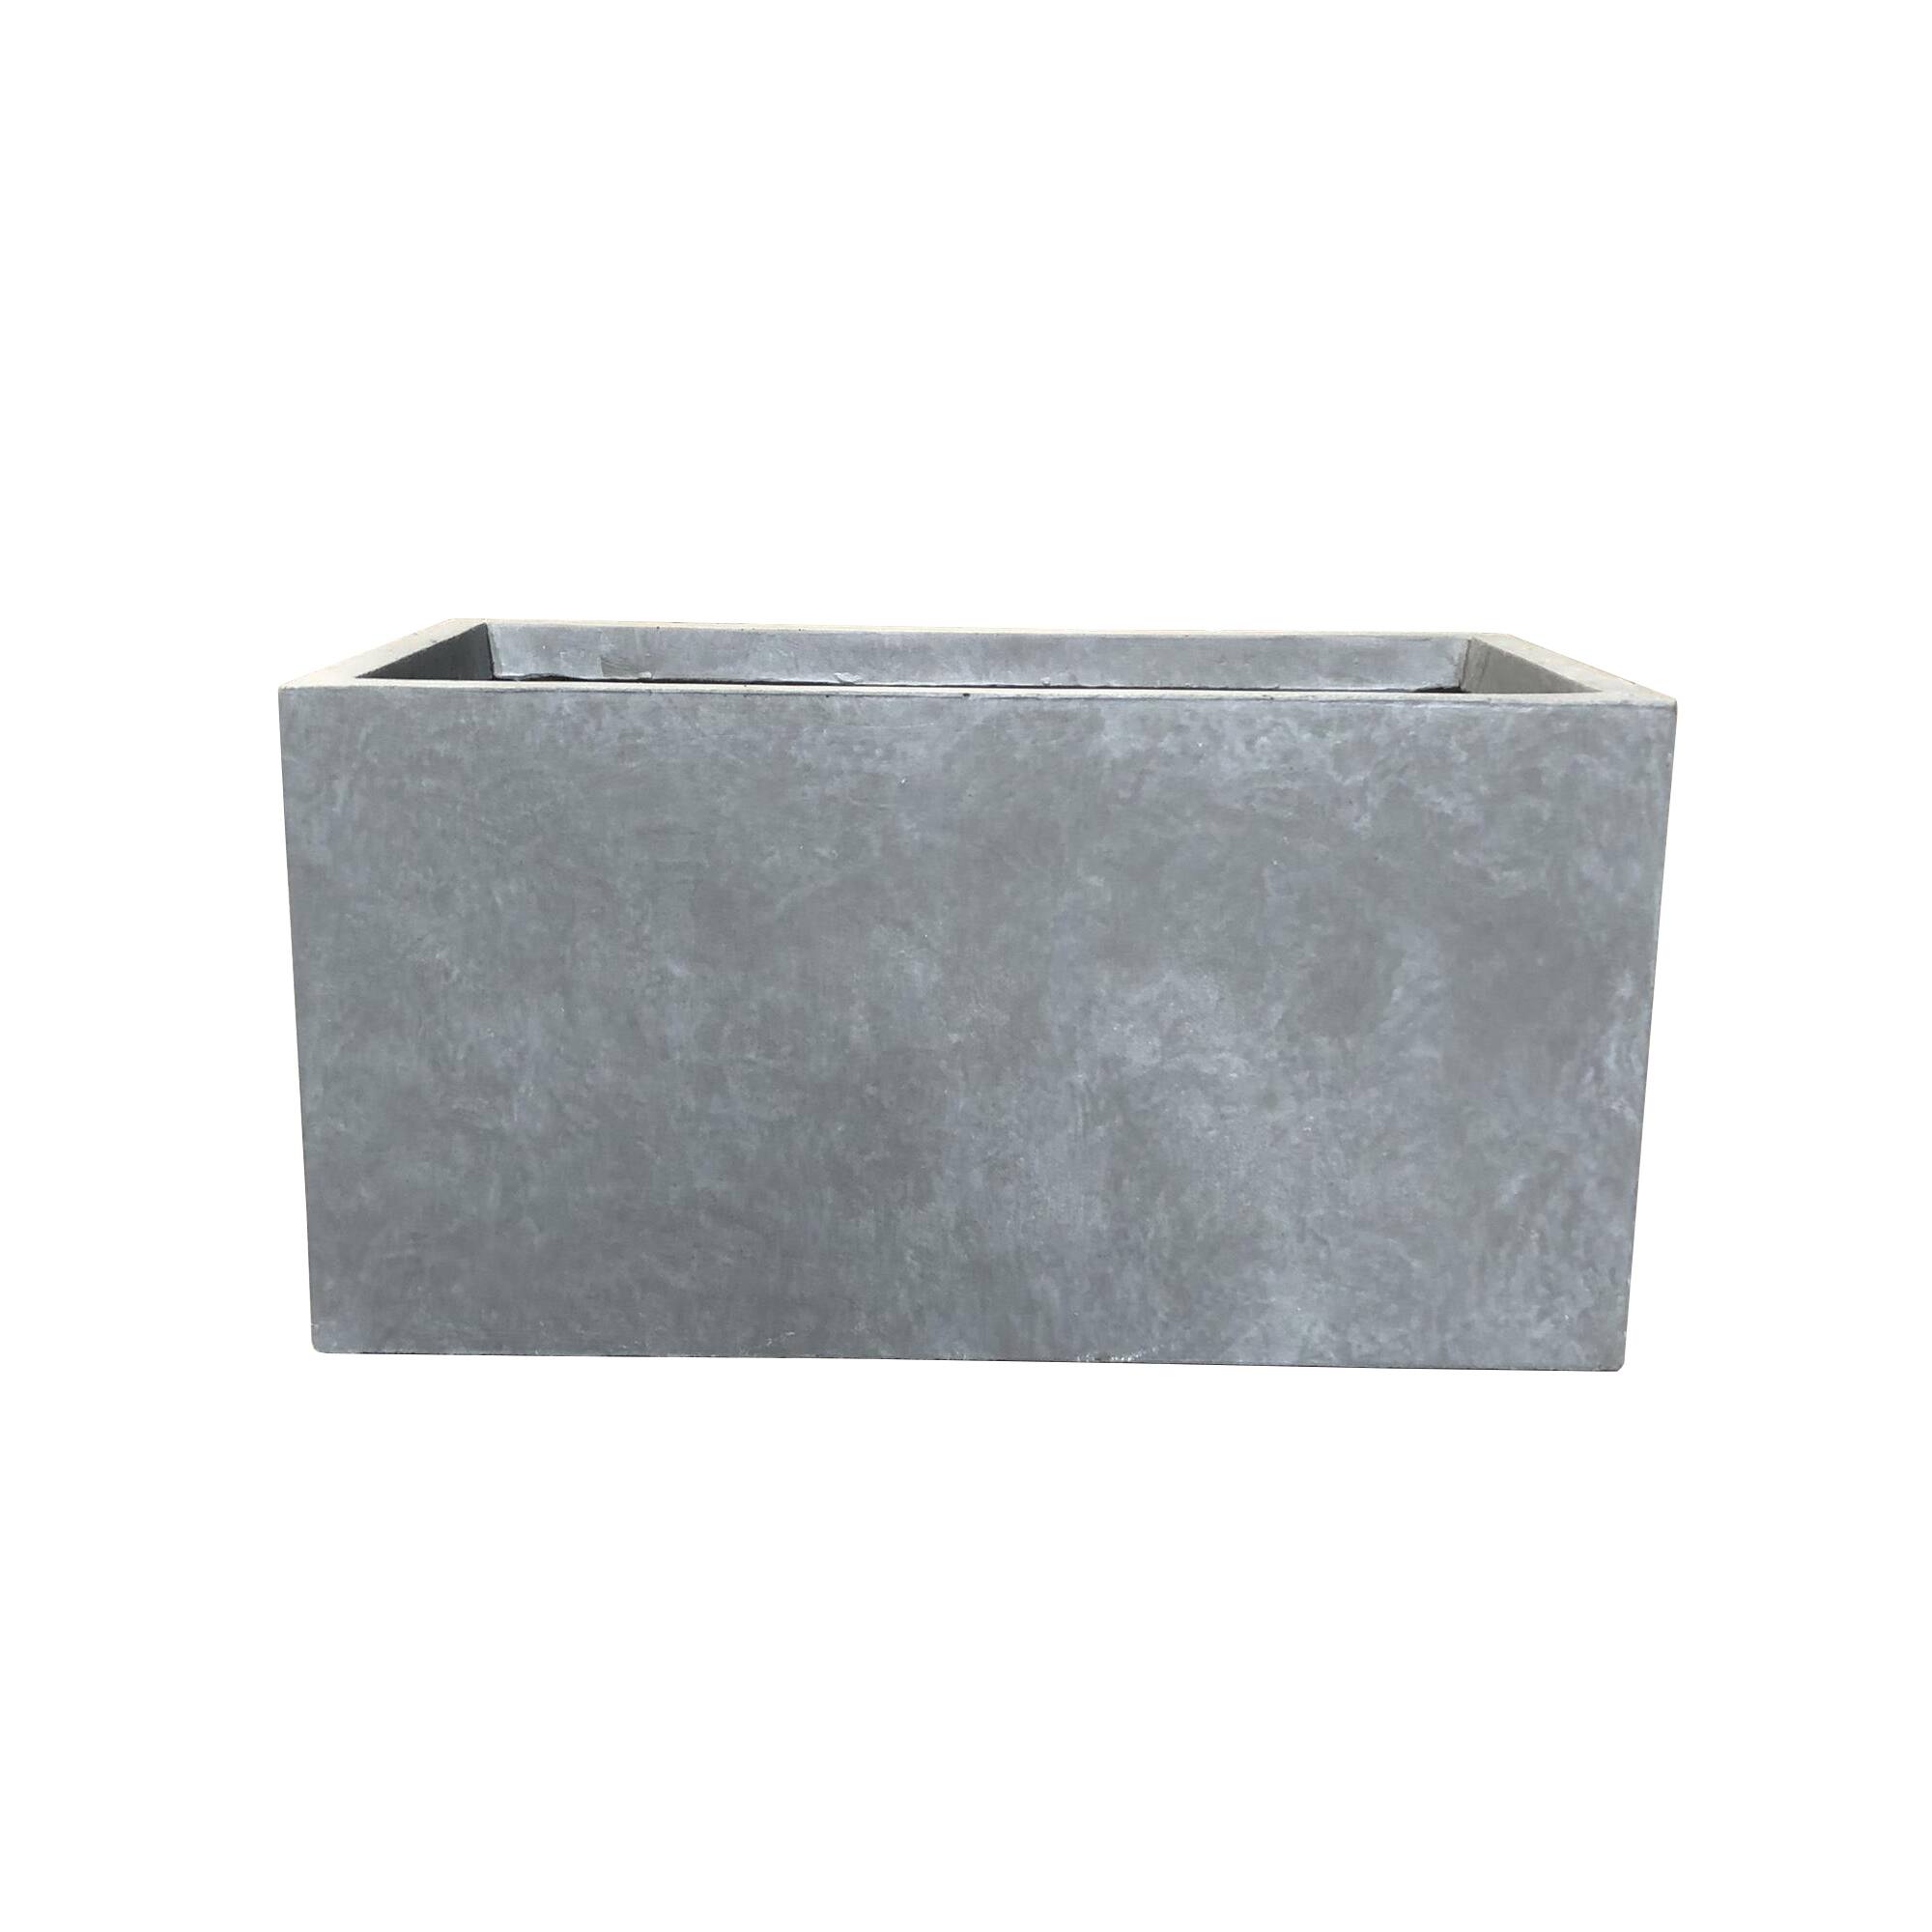 Durx-litecrete Lightweight Concrete Modern Long Cement Color Low Planter-Small - 23.2'x11.8'x12'